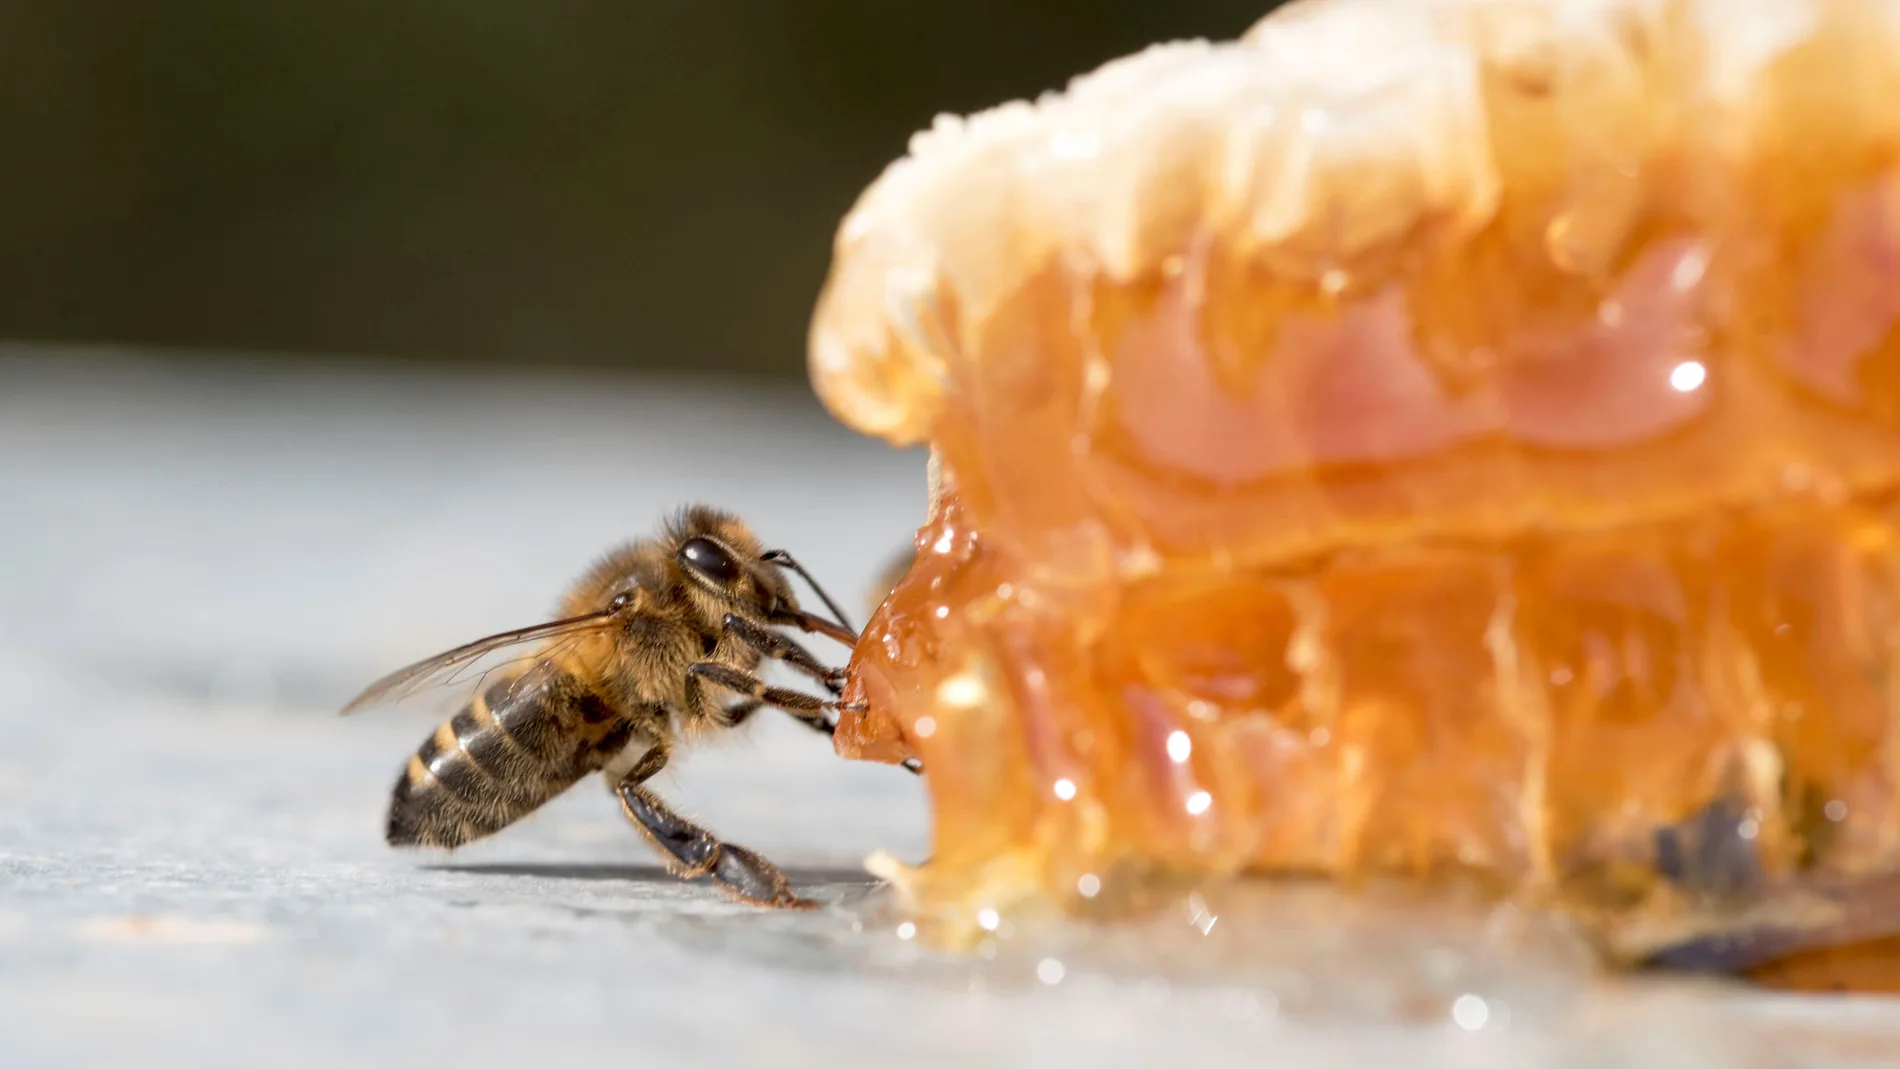 ¿Por qué el reto de la miel congelada en TikTok es tan peligroso?